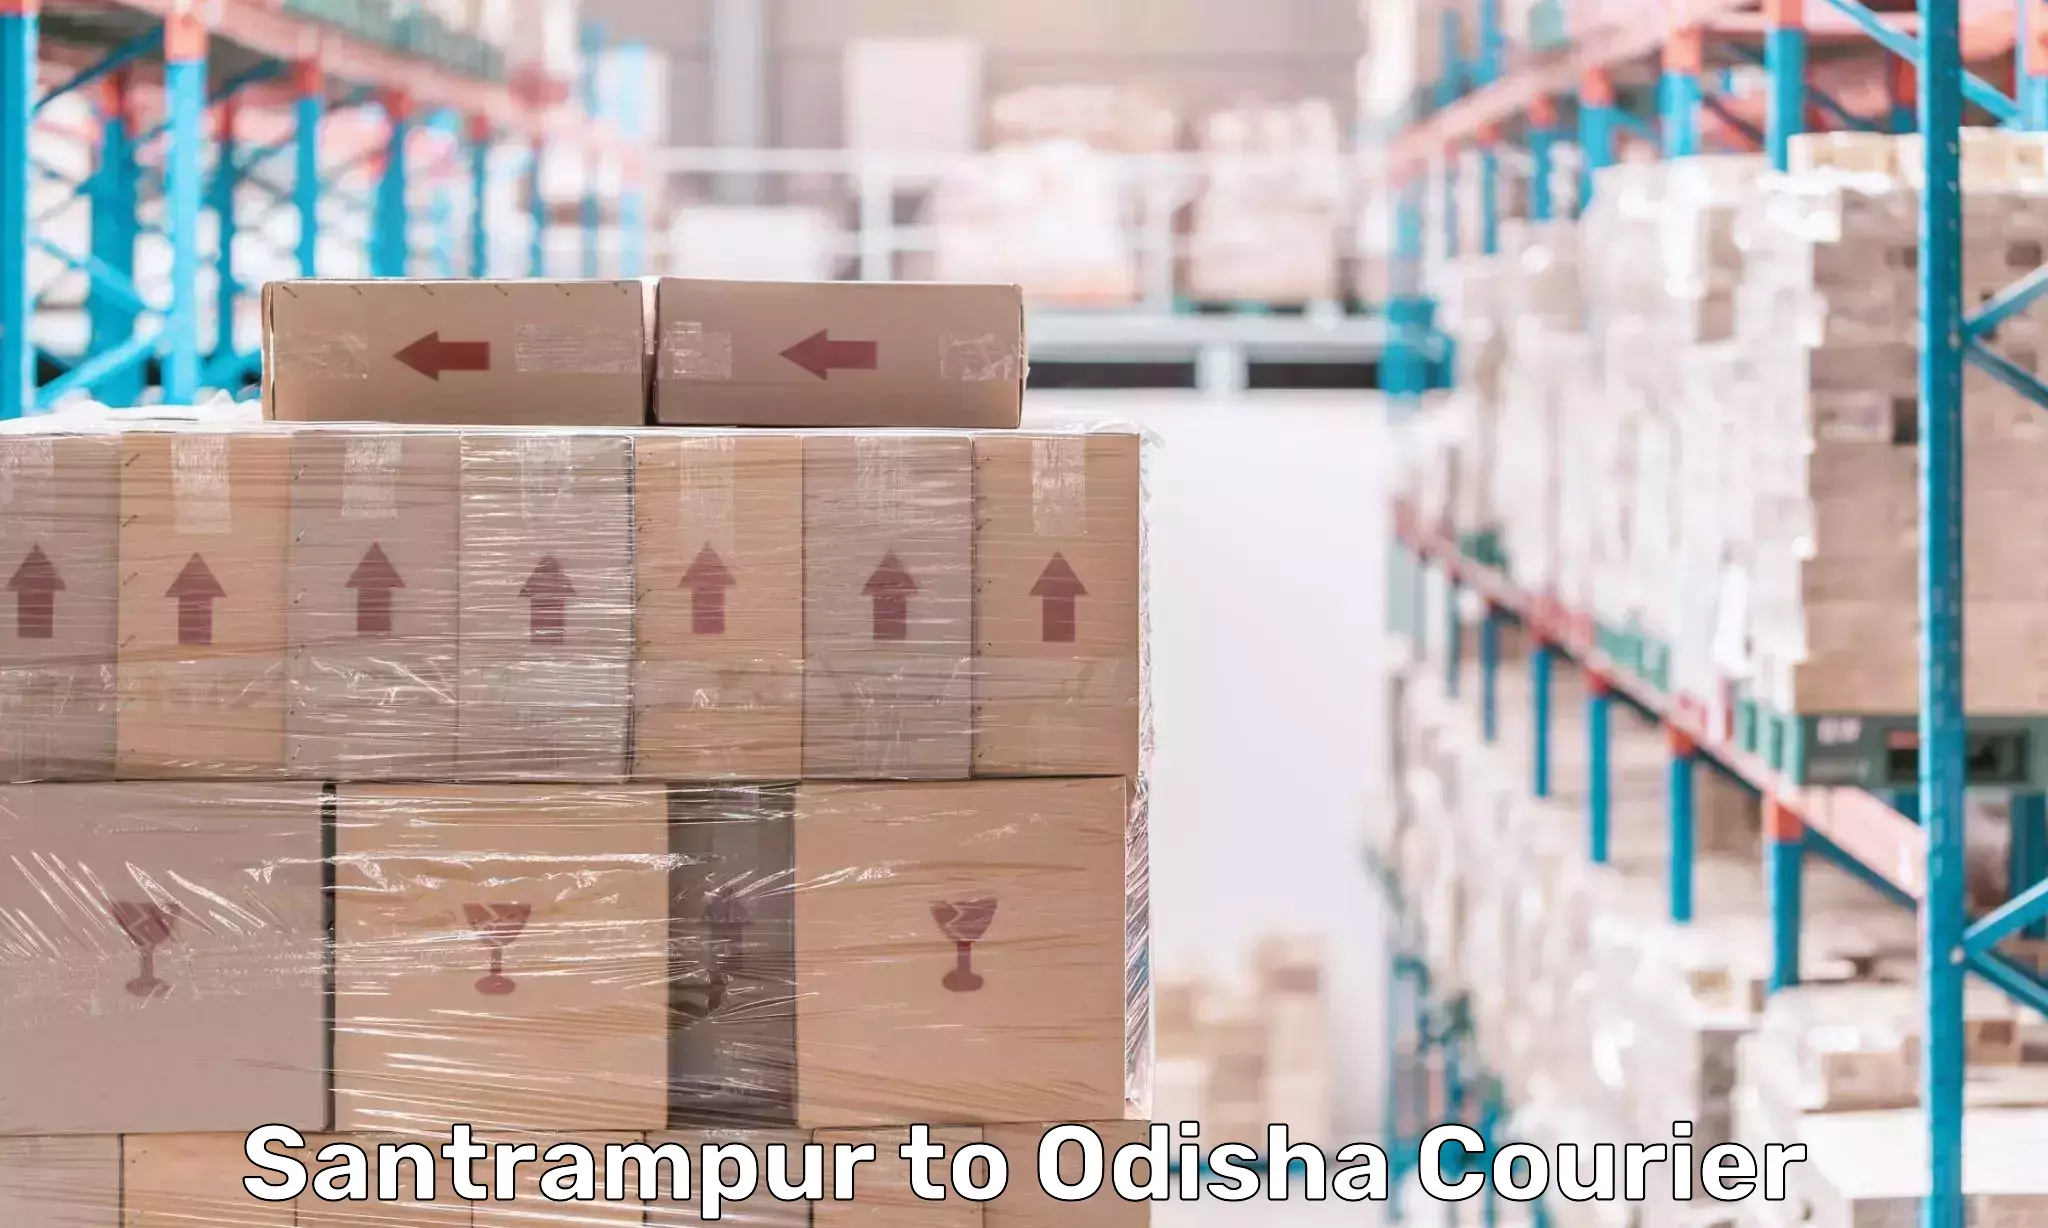 Expedited shipping methods Santrampur to Baleswar